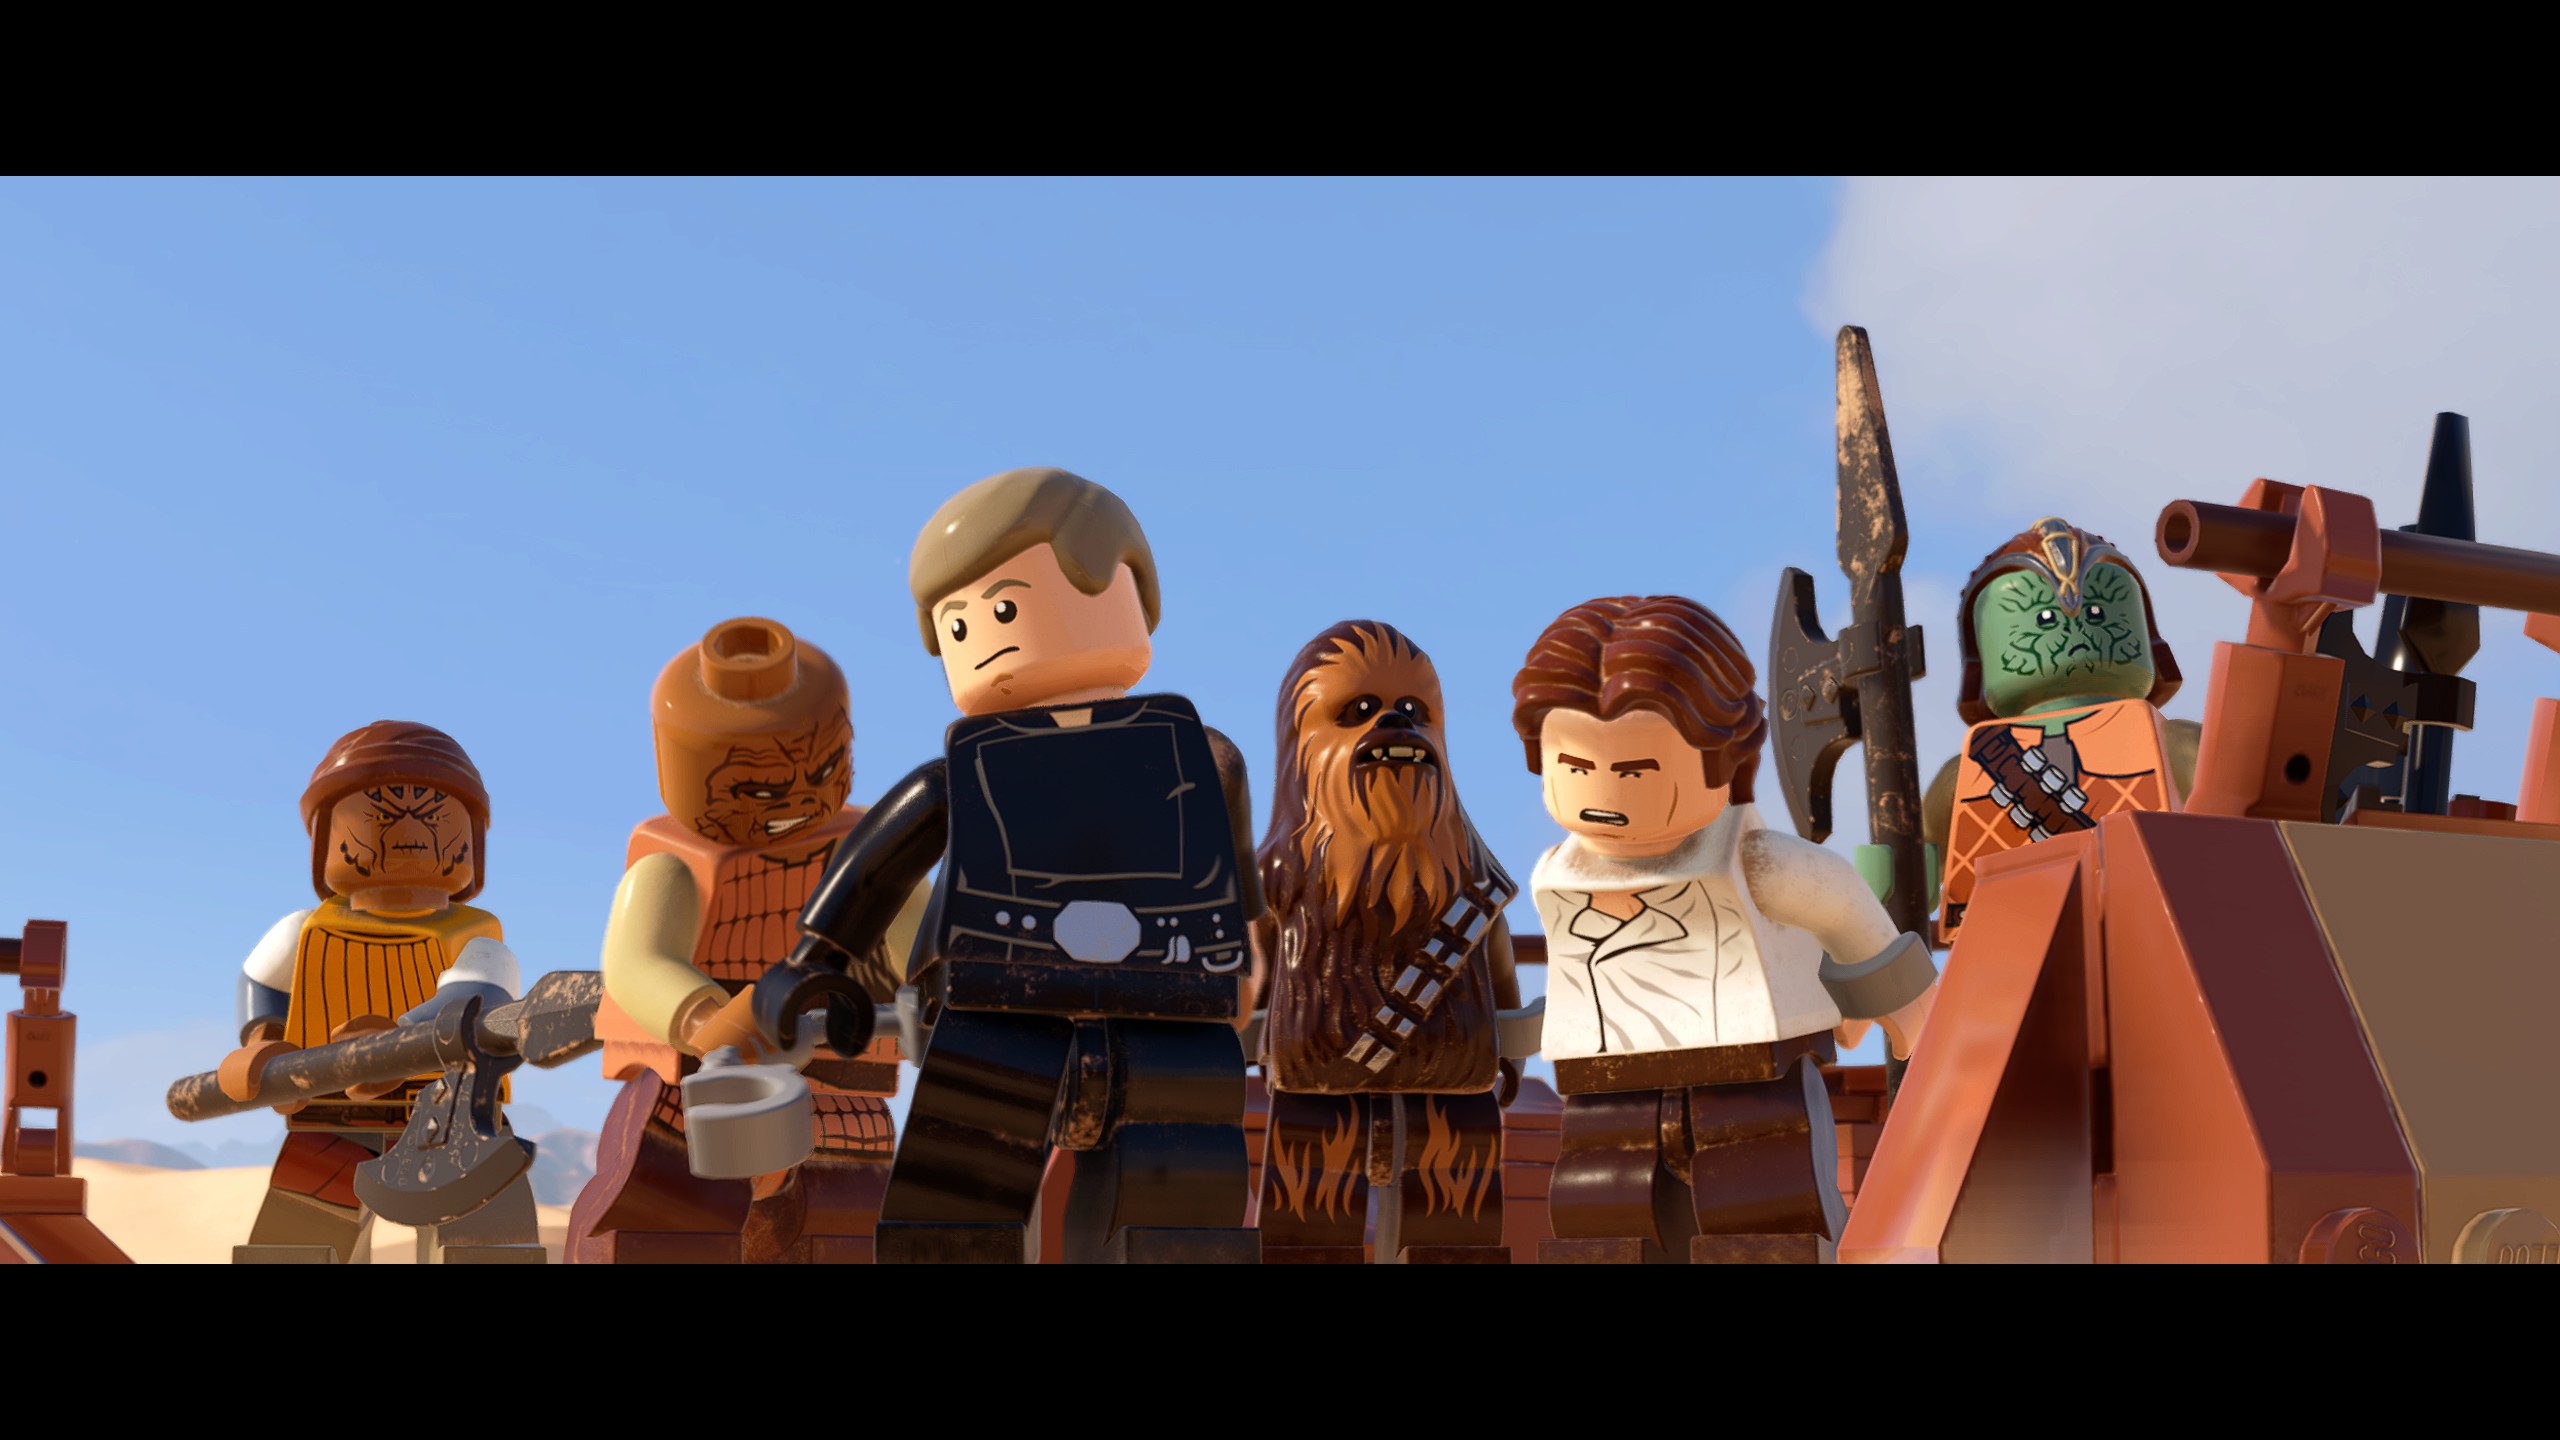 General 2560x1440 Star Wars LEGO Star Wars LEGO TV digital art